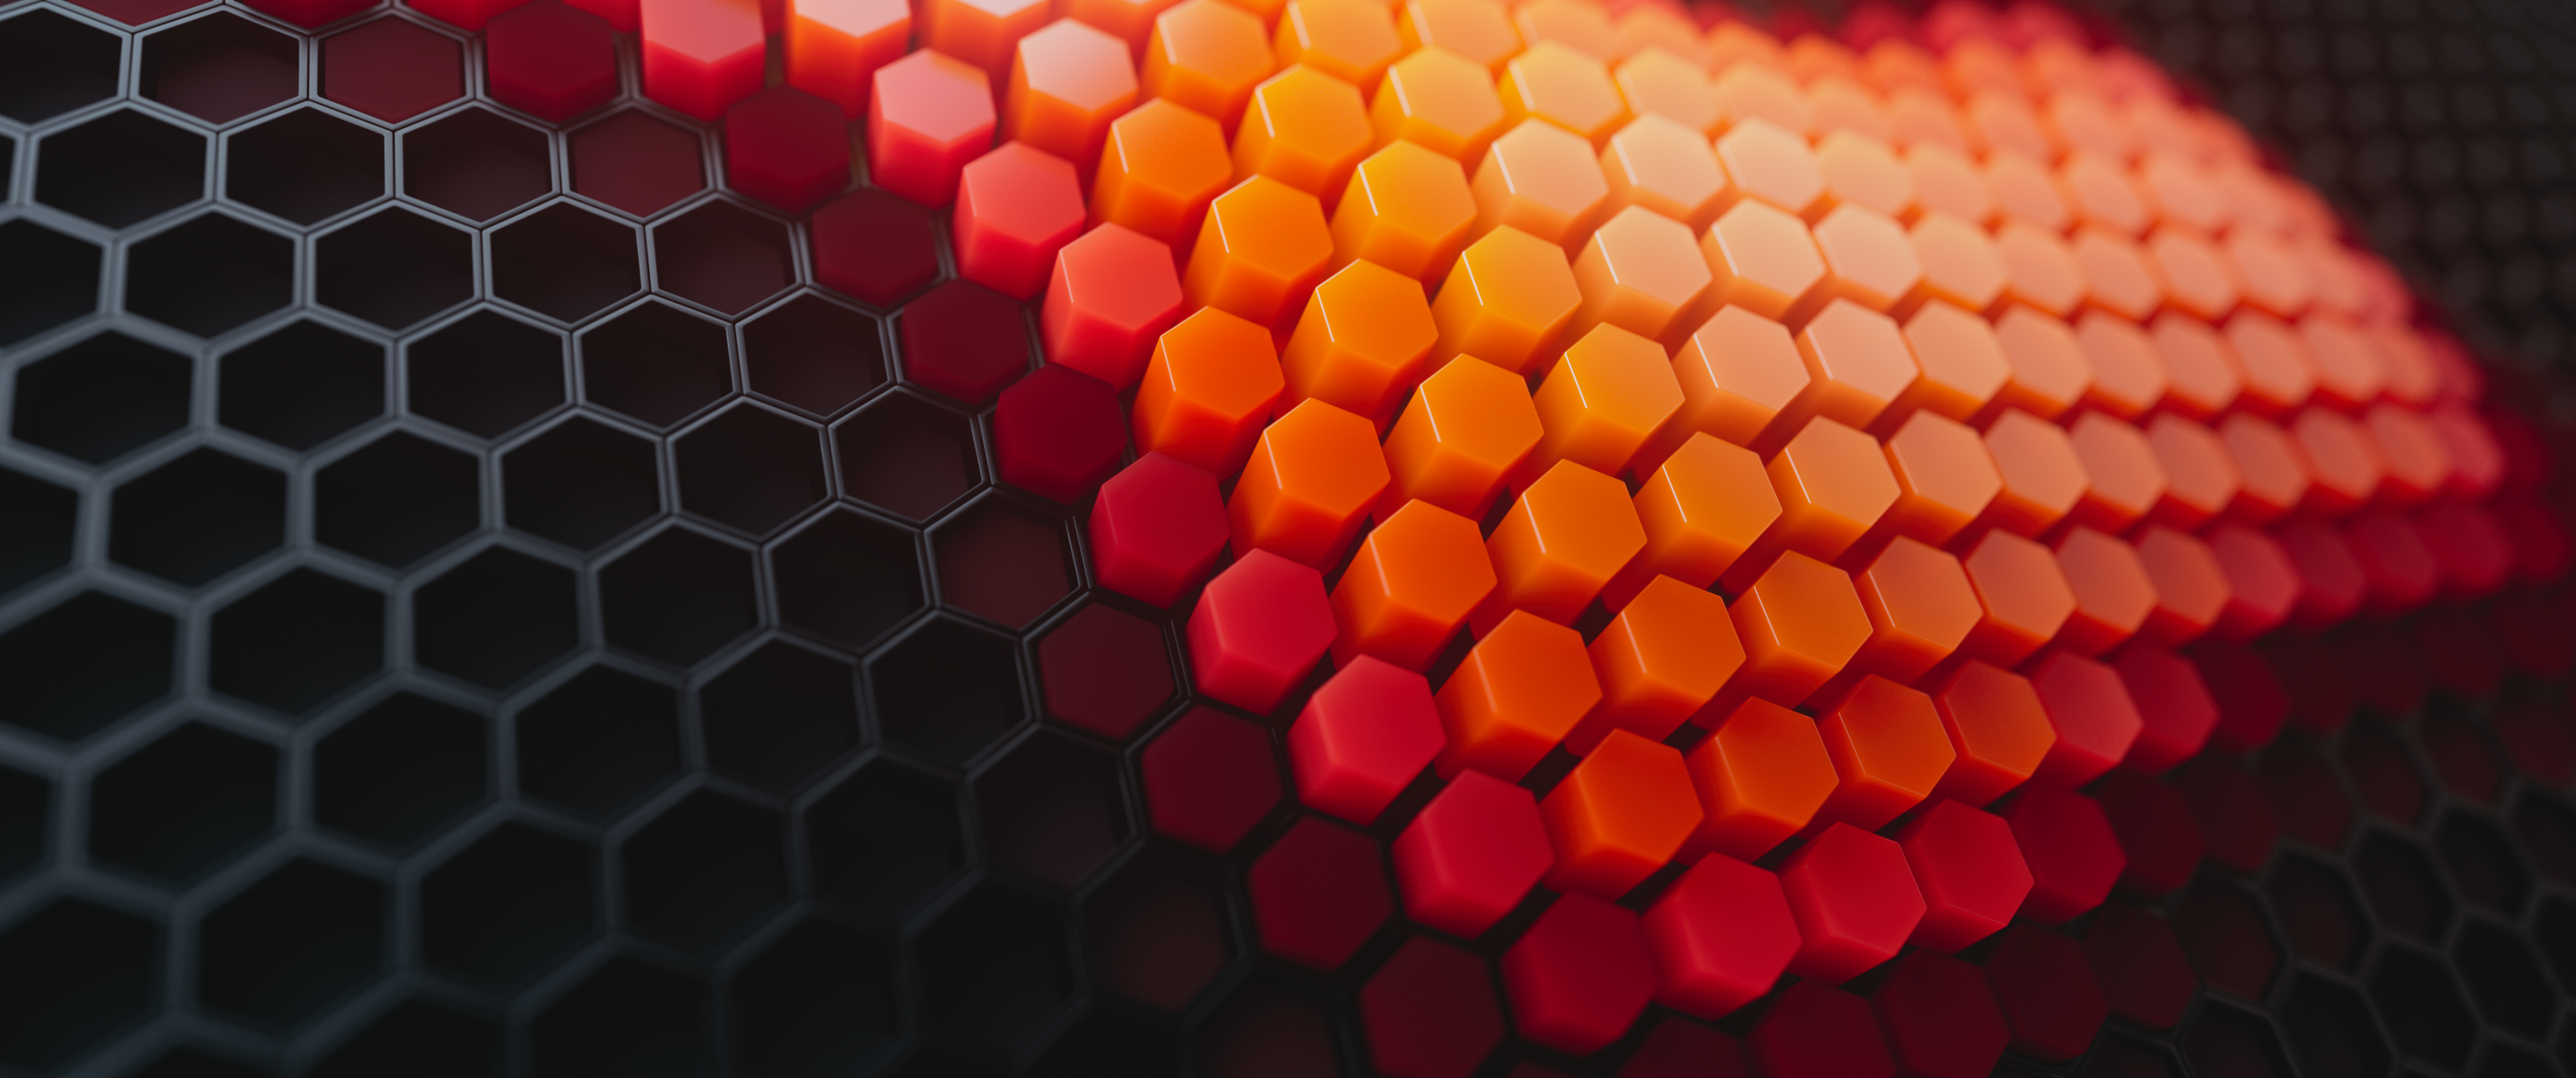 Bộ sưu tập hình nền Hexagons 4K trên WallpaperDog sẽ khiến bạn say mê với họa tiết, trừu tượng và số #2287 cuốn hút. Mỗi hình ảnh đều được thể hiện với độ phân giải cao, sắc nét và tinh tế. Khám phá những mẫu hexagon độc đáo, tròn trịa và không gian ấm áp để xây dựng cho màn hình của bạn một cái nhìn mới mẻ.